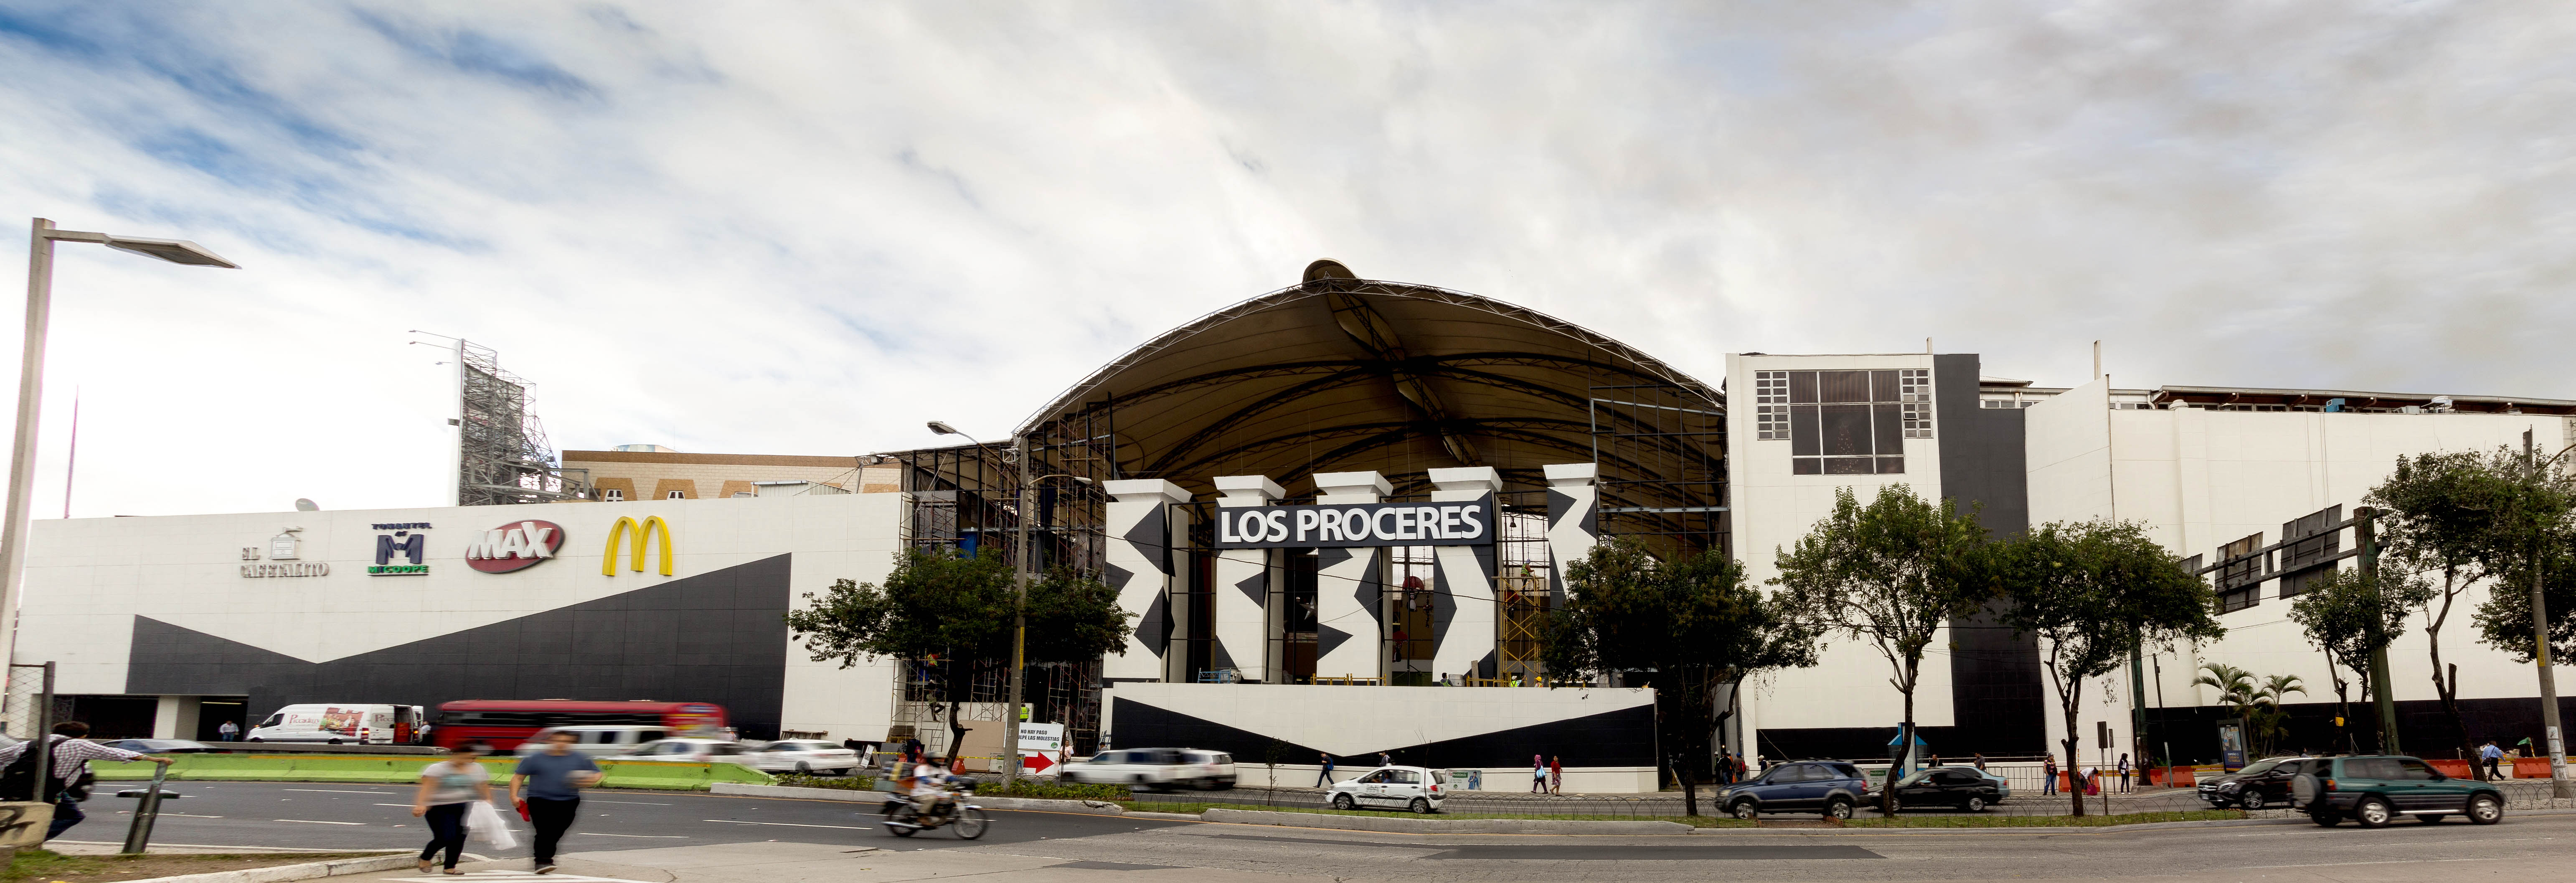 Remodelan el Centro Comercial Los Próceres